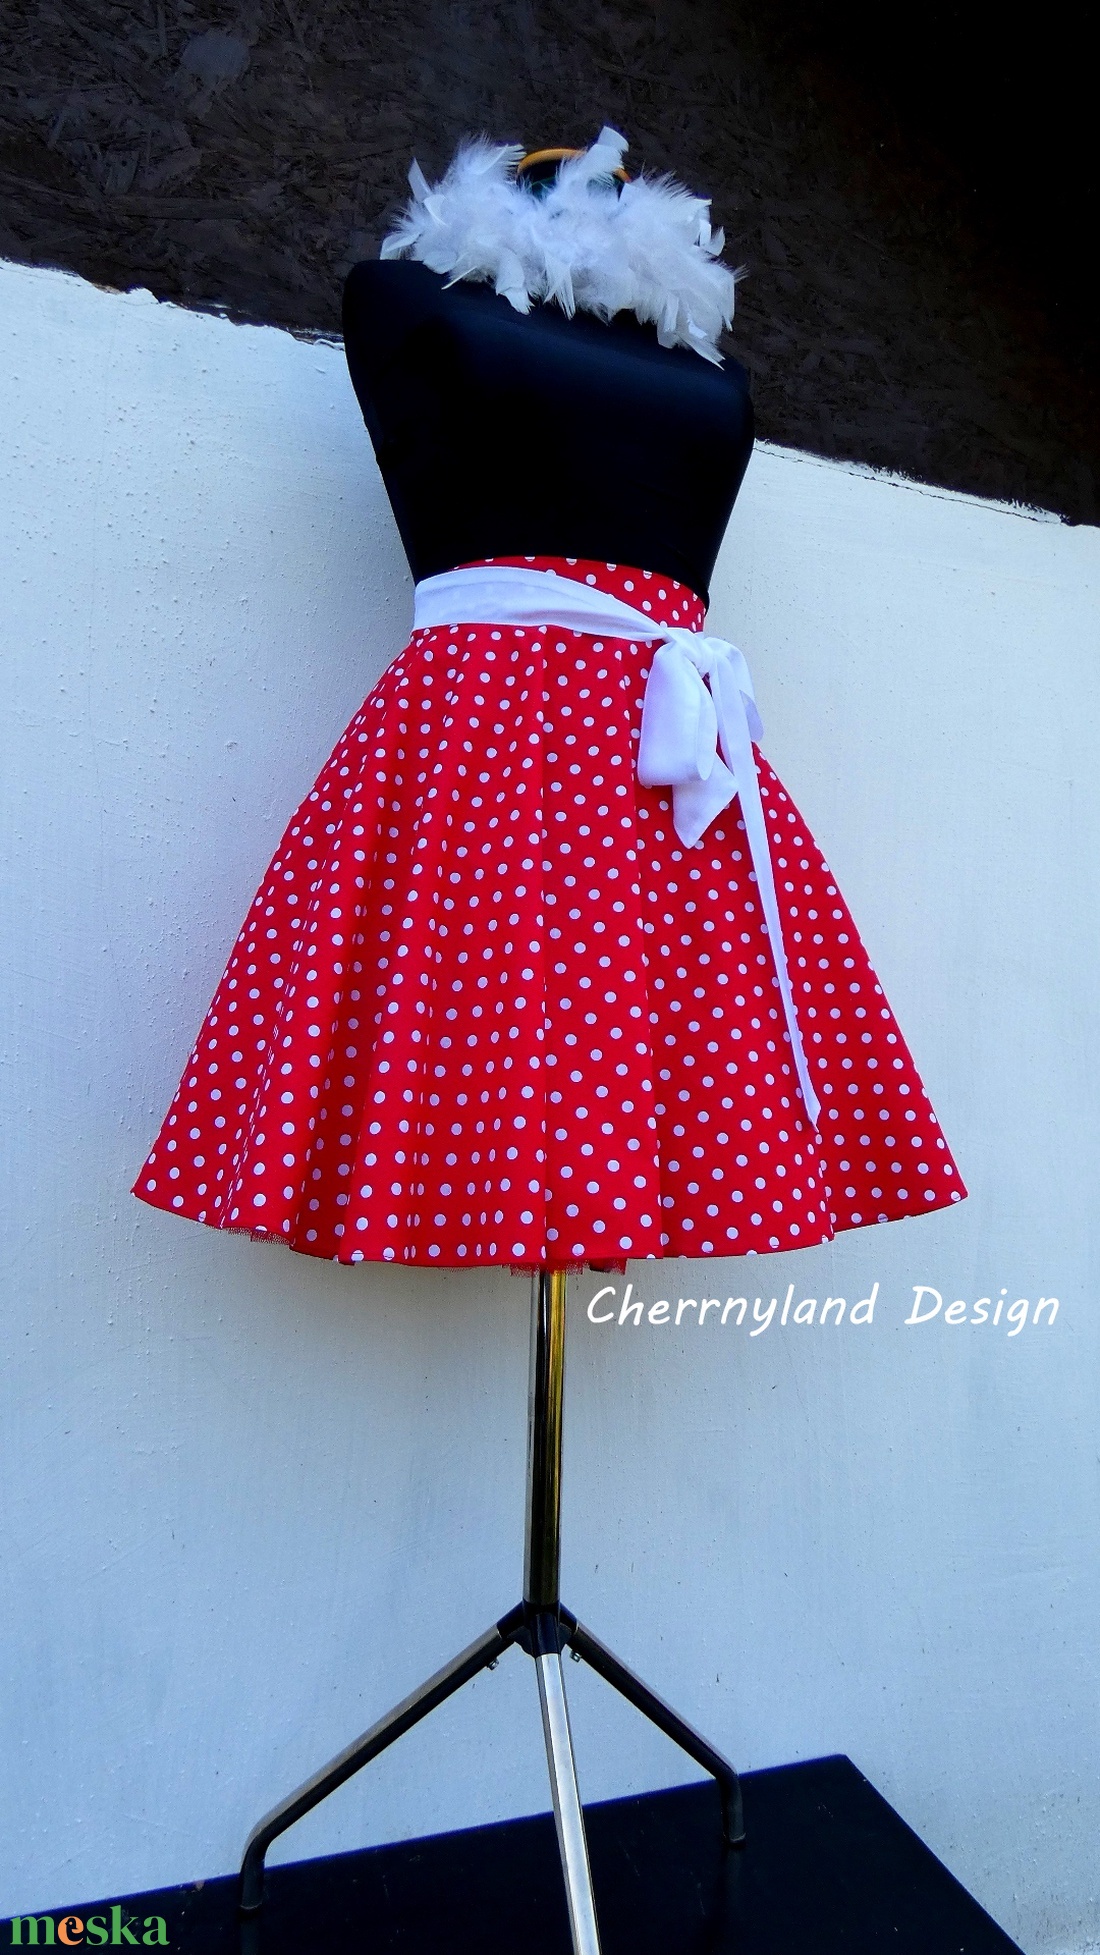   Cherryland Design Piros-Fehér pöttyös rockabilly szoknya./Alsószoknyával -  - Meska.hu